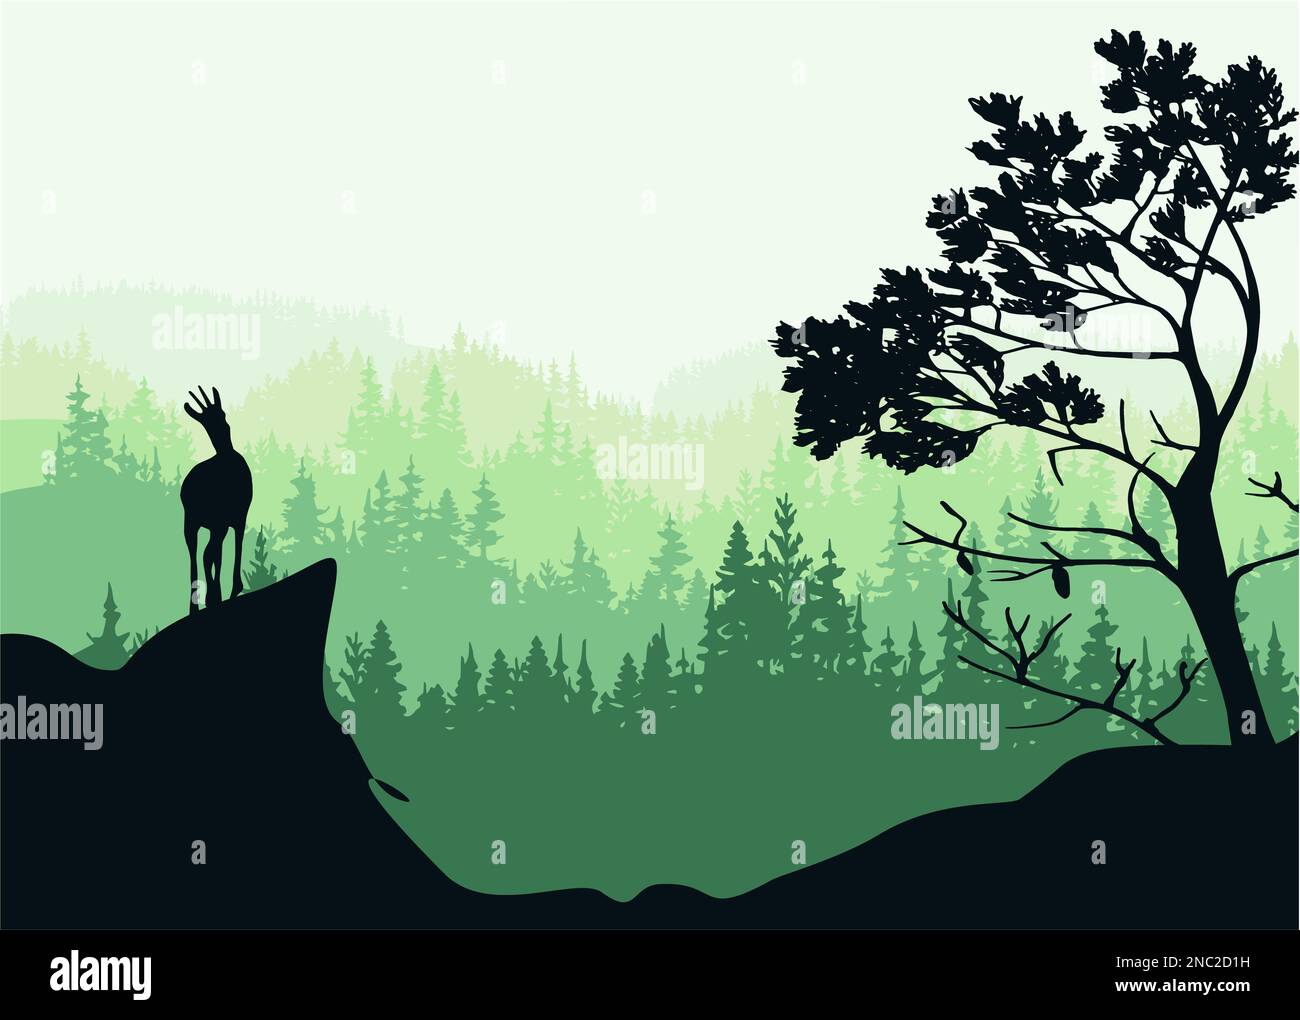 Ein Chamois steht auf einem Hügel mit Bergen und Wald im Hintergrund. Kiefer im Vordergrund. Magische nebelige Landschaft. Naturillustrierung. Stockfoto